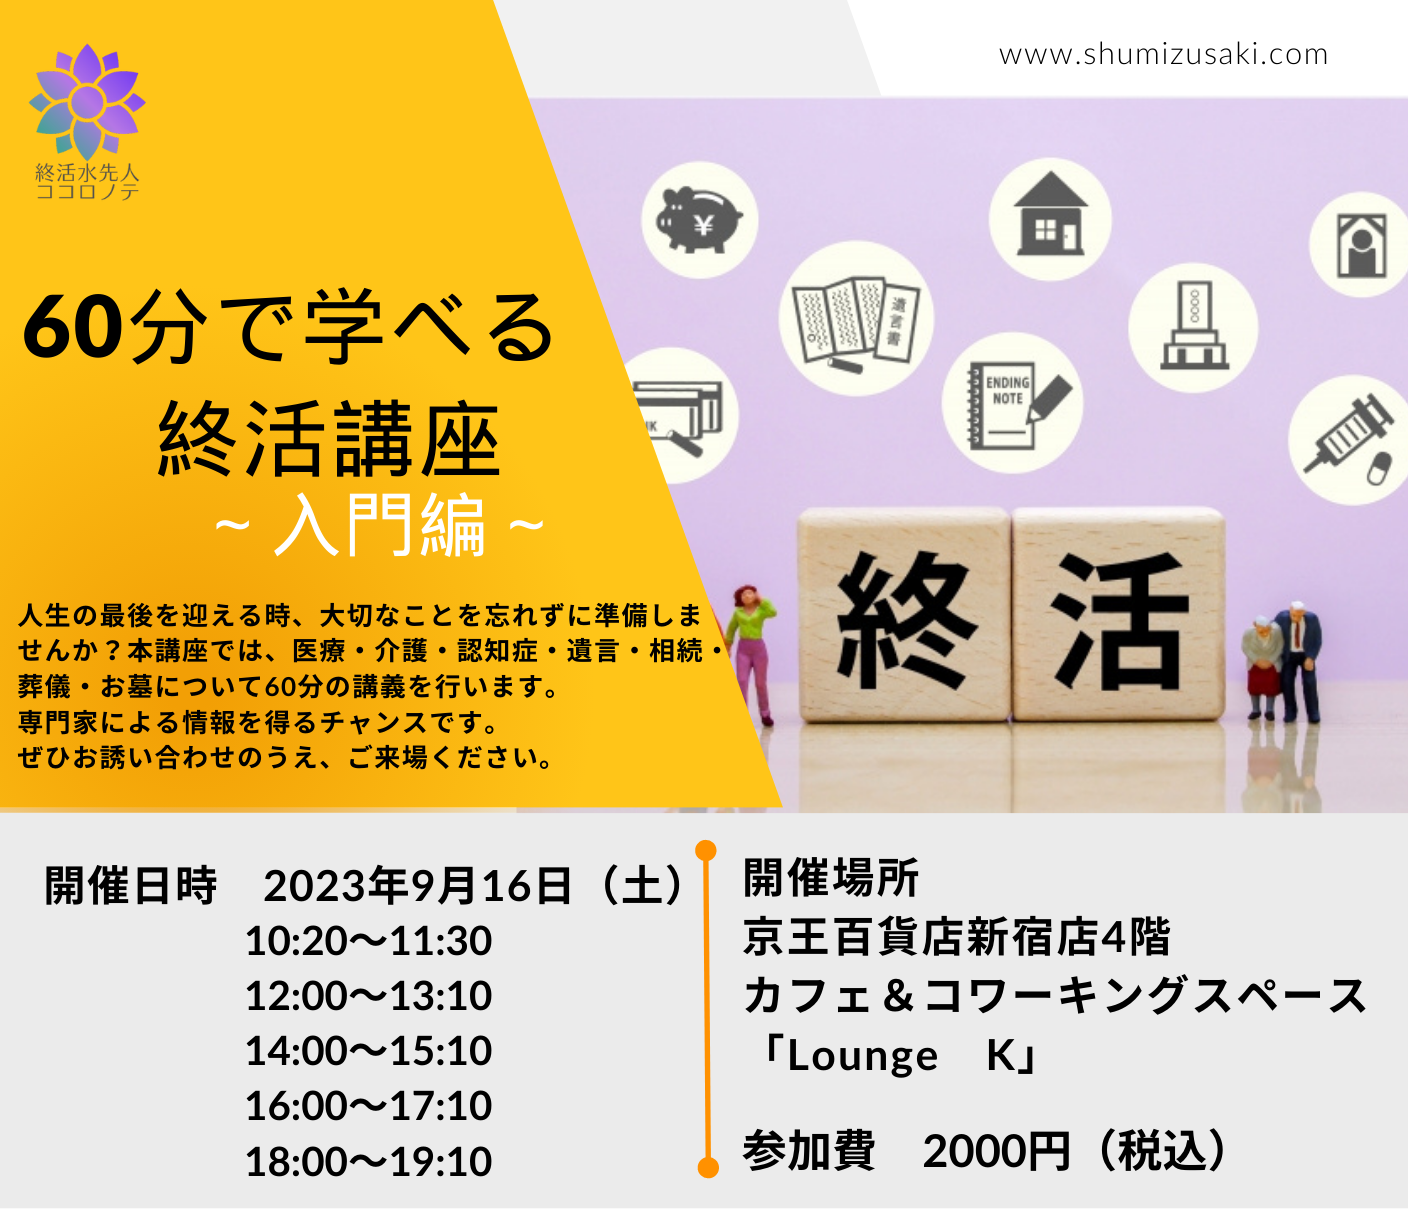 60分で学べる終活講座～入門編～9月16日東京都で開催します。